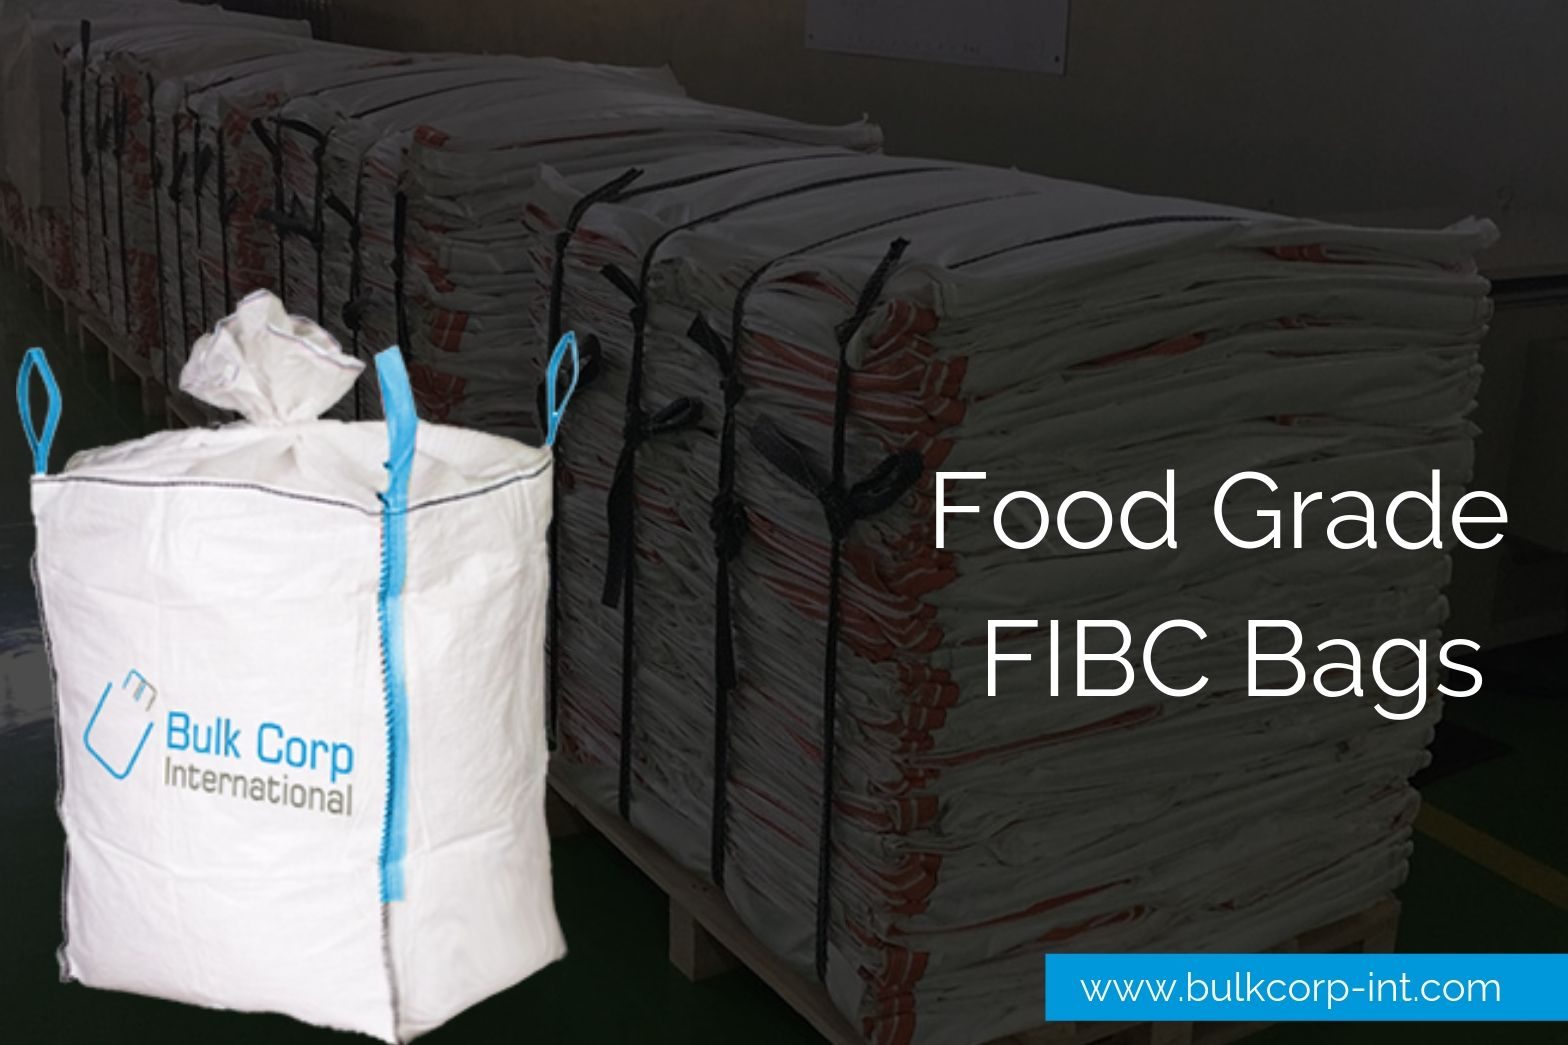 Food Grade FIBC Bags